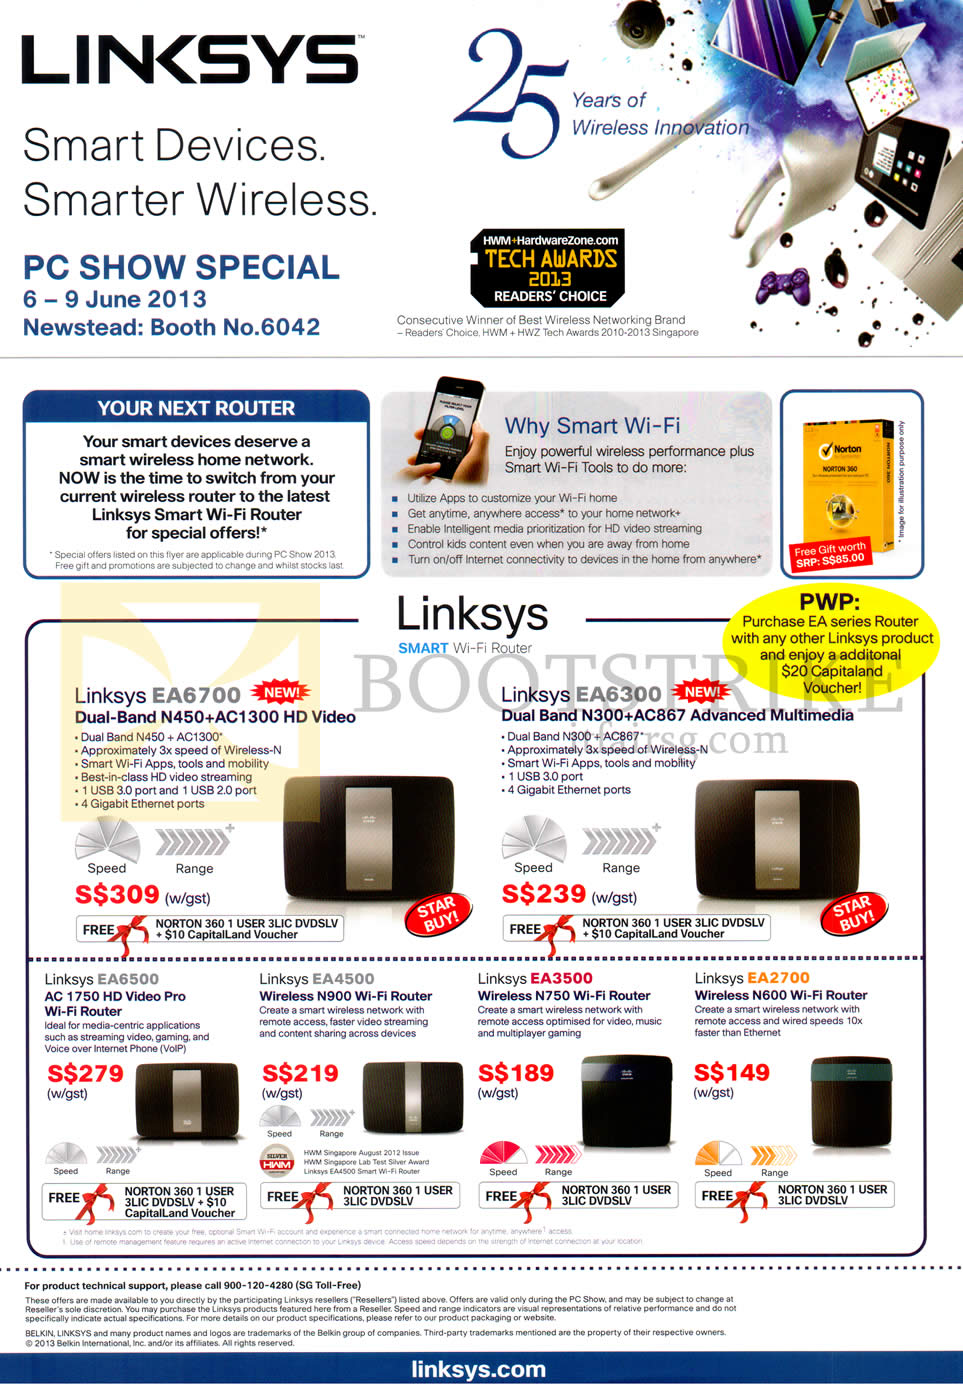 PC SHOW 2013 price list image brochure of Linksys Networking Routers EA6700, EA6300, EA6500, EA4500, EA3500, EA2700